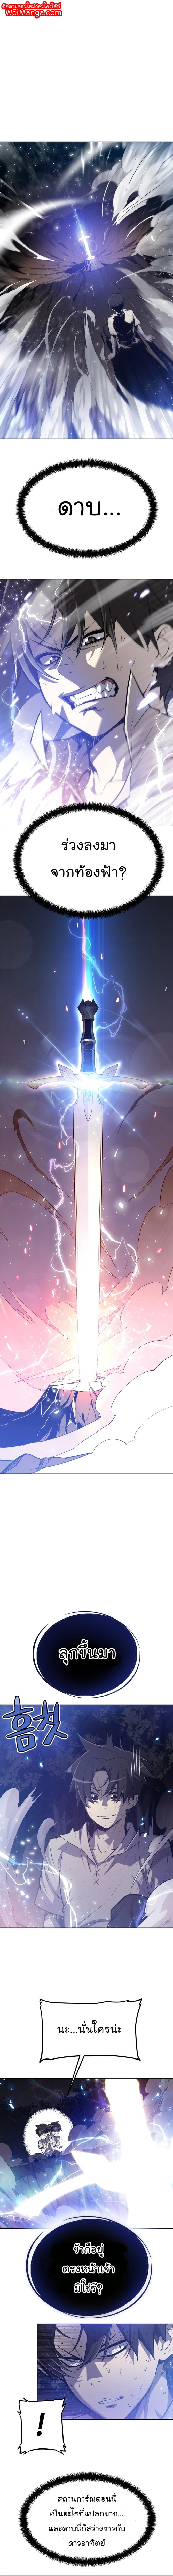 Overpowered Sword01